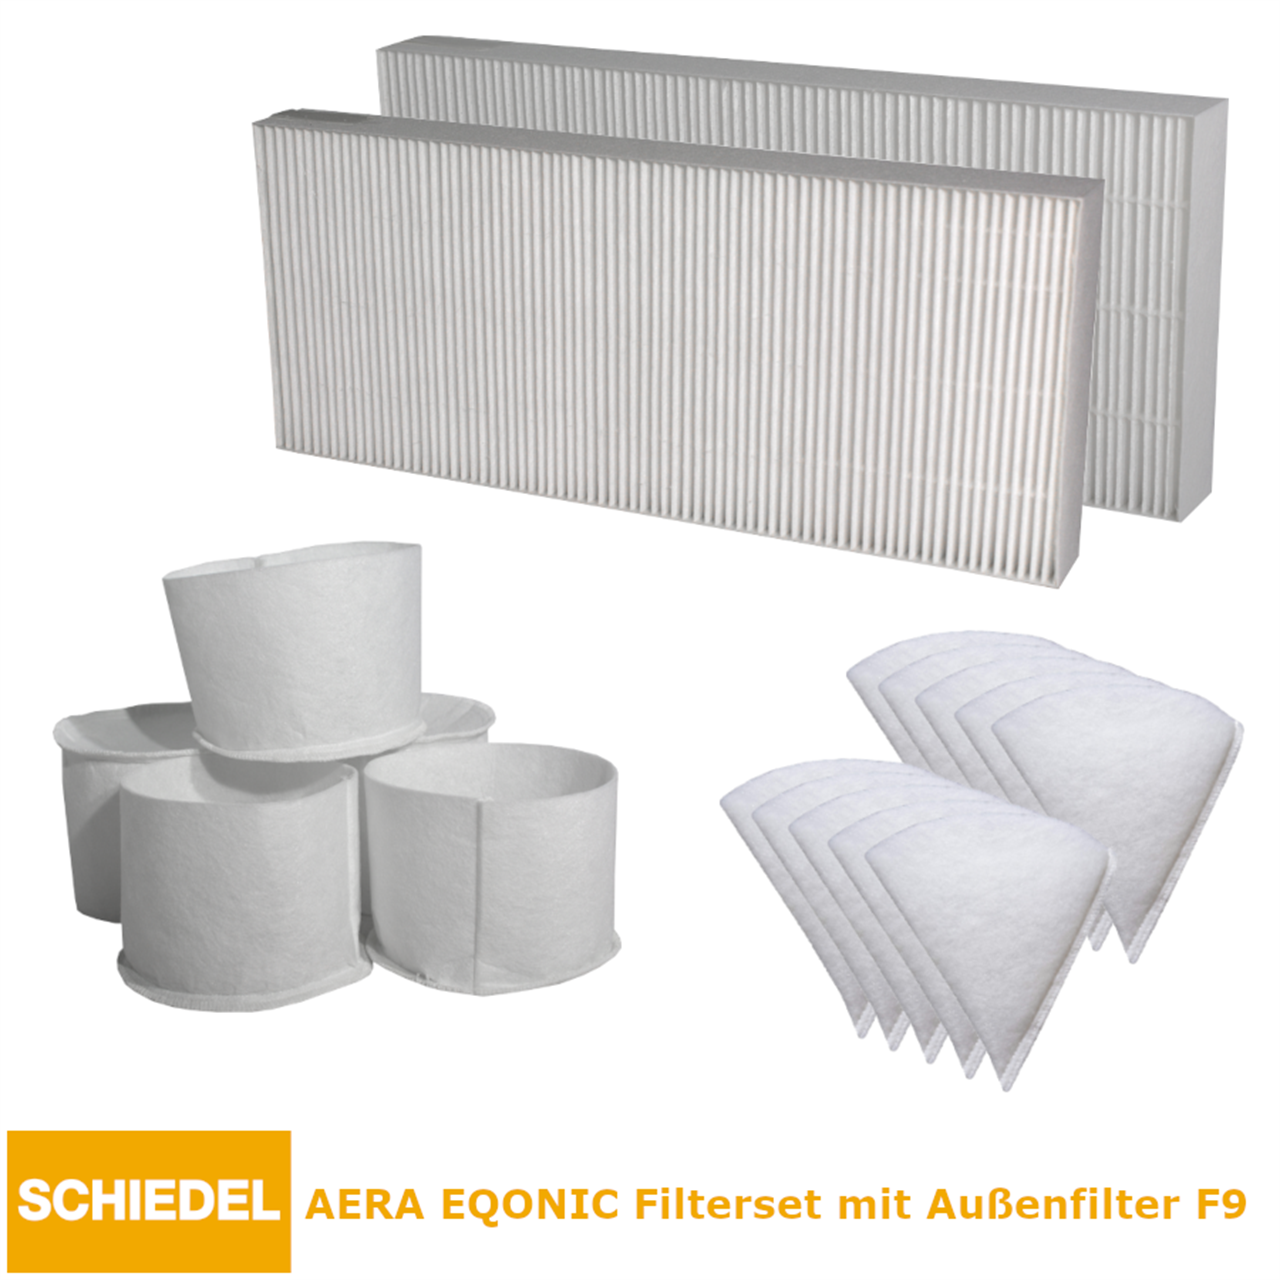 AERA EQONIC Filter-Set mit Außenluftfilter F9 für Ansaugelement ab 2013 (Pollenfilterkassette) 12074